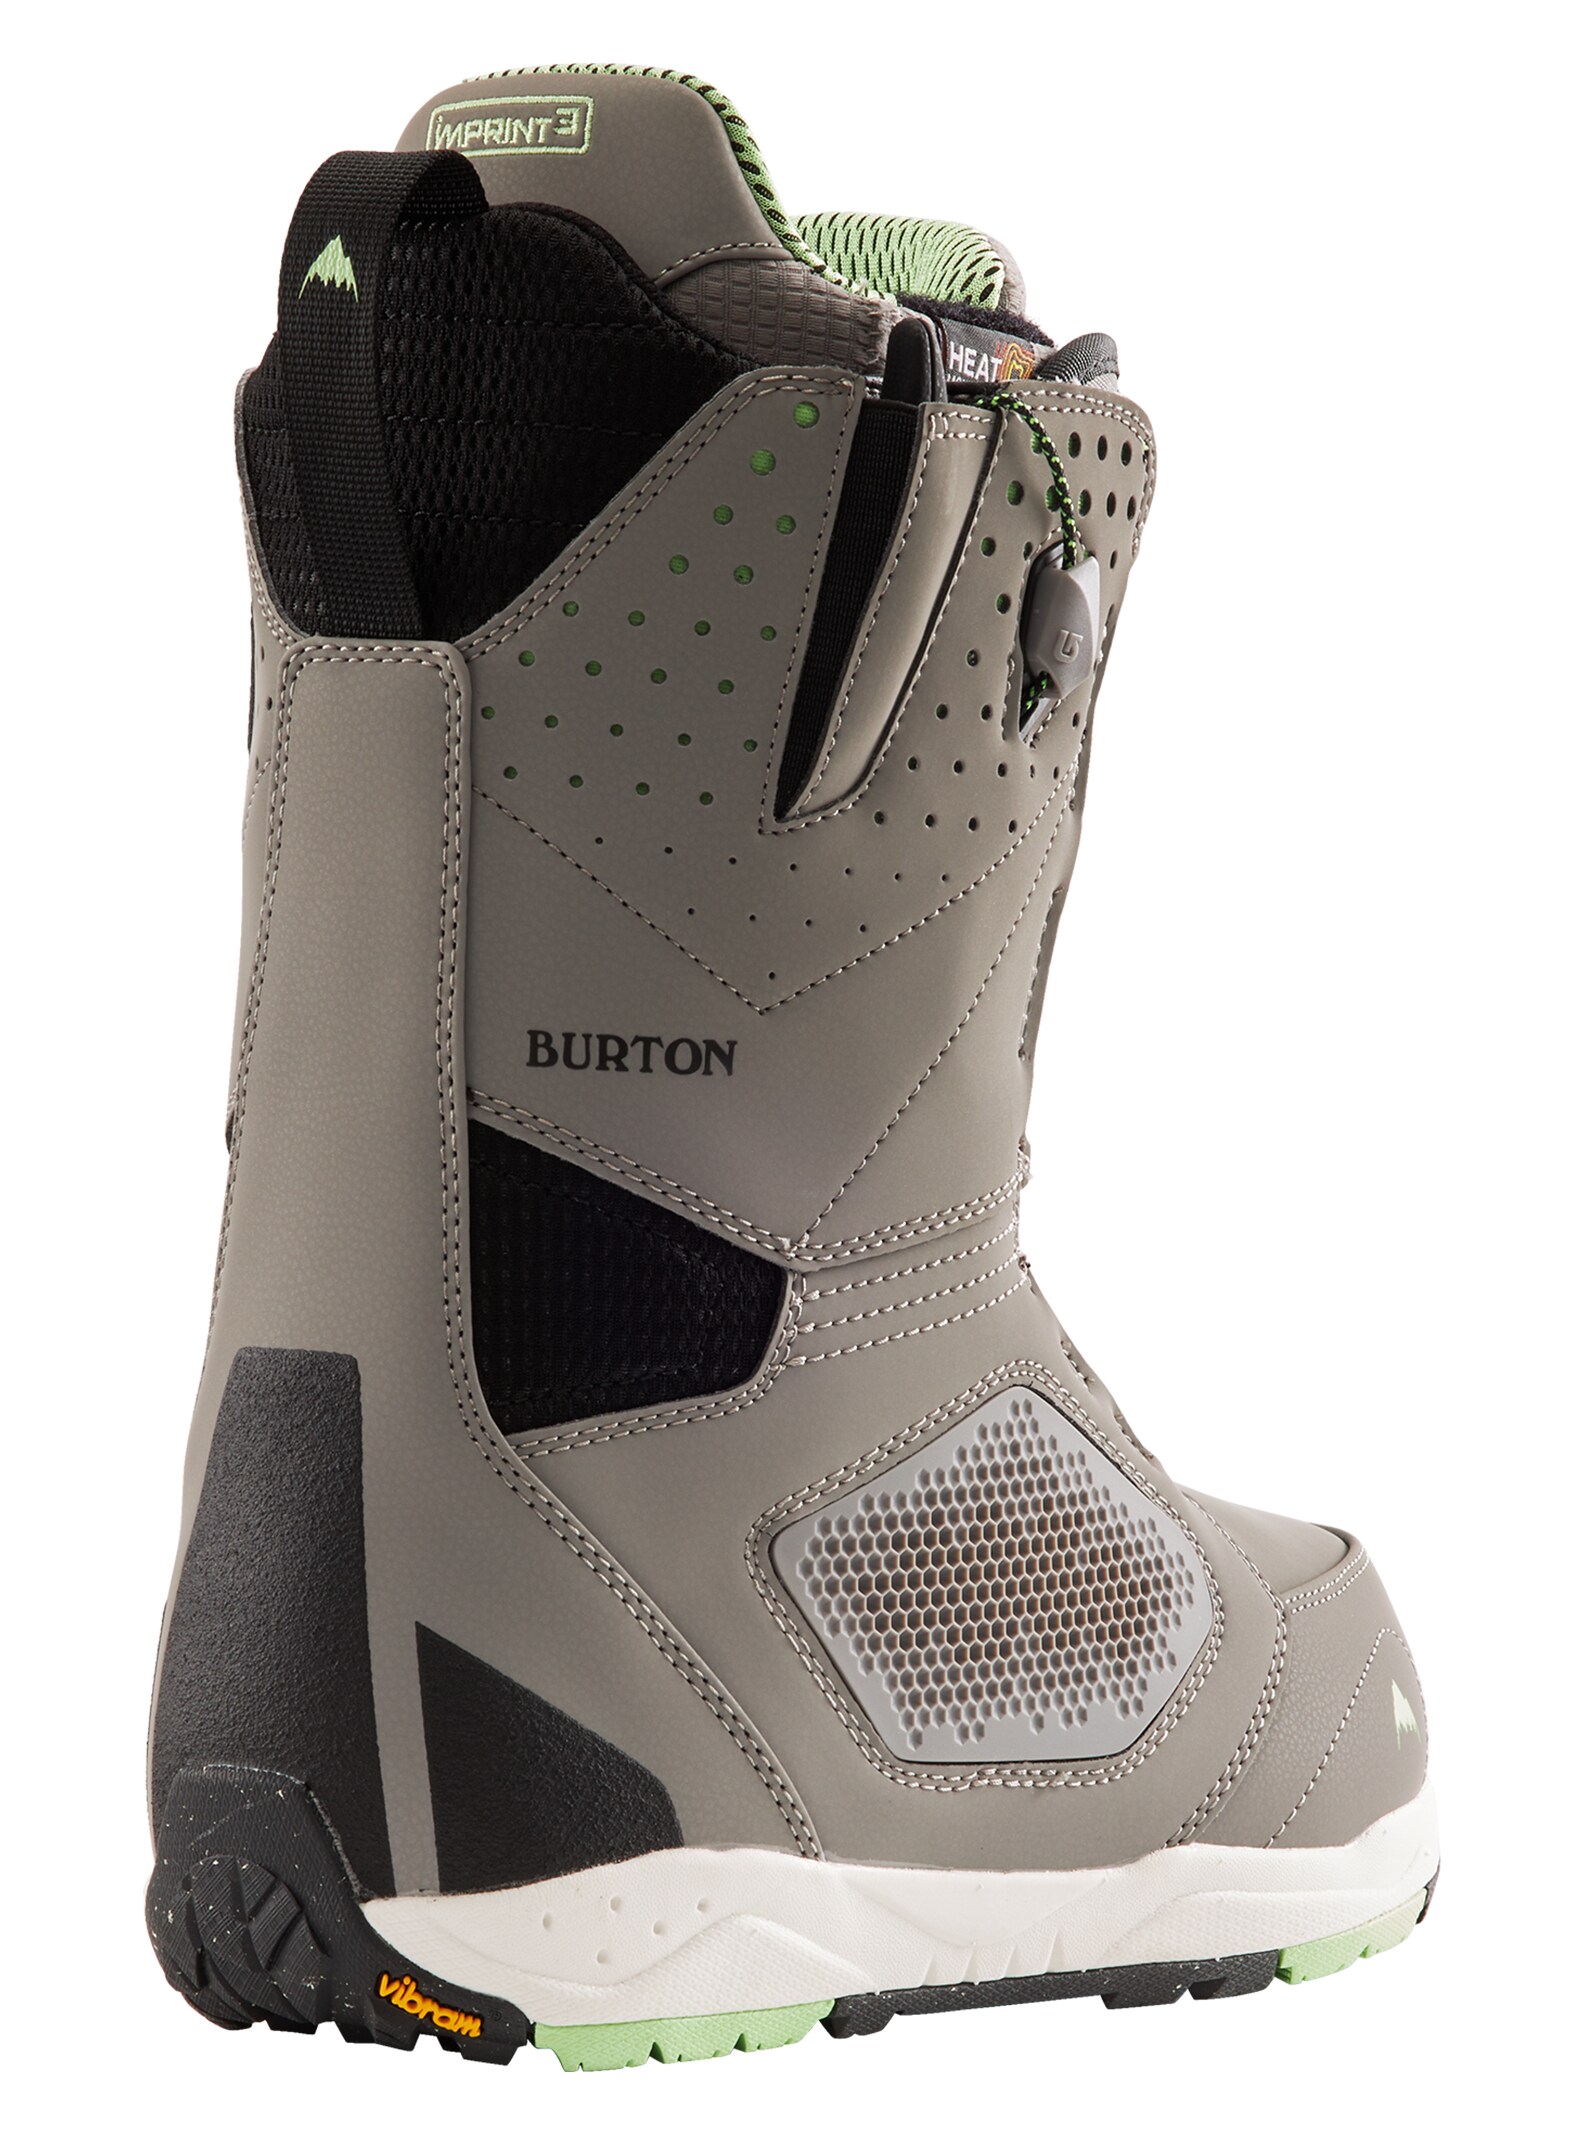 Ботинки для сноуборда Burton Photon купить в Boardshop №1